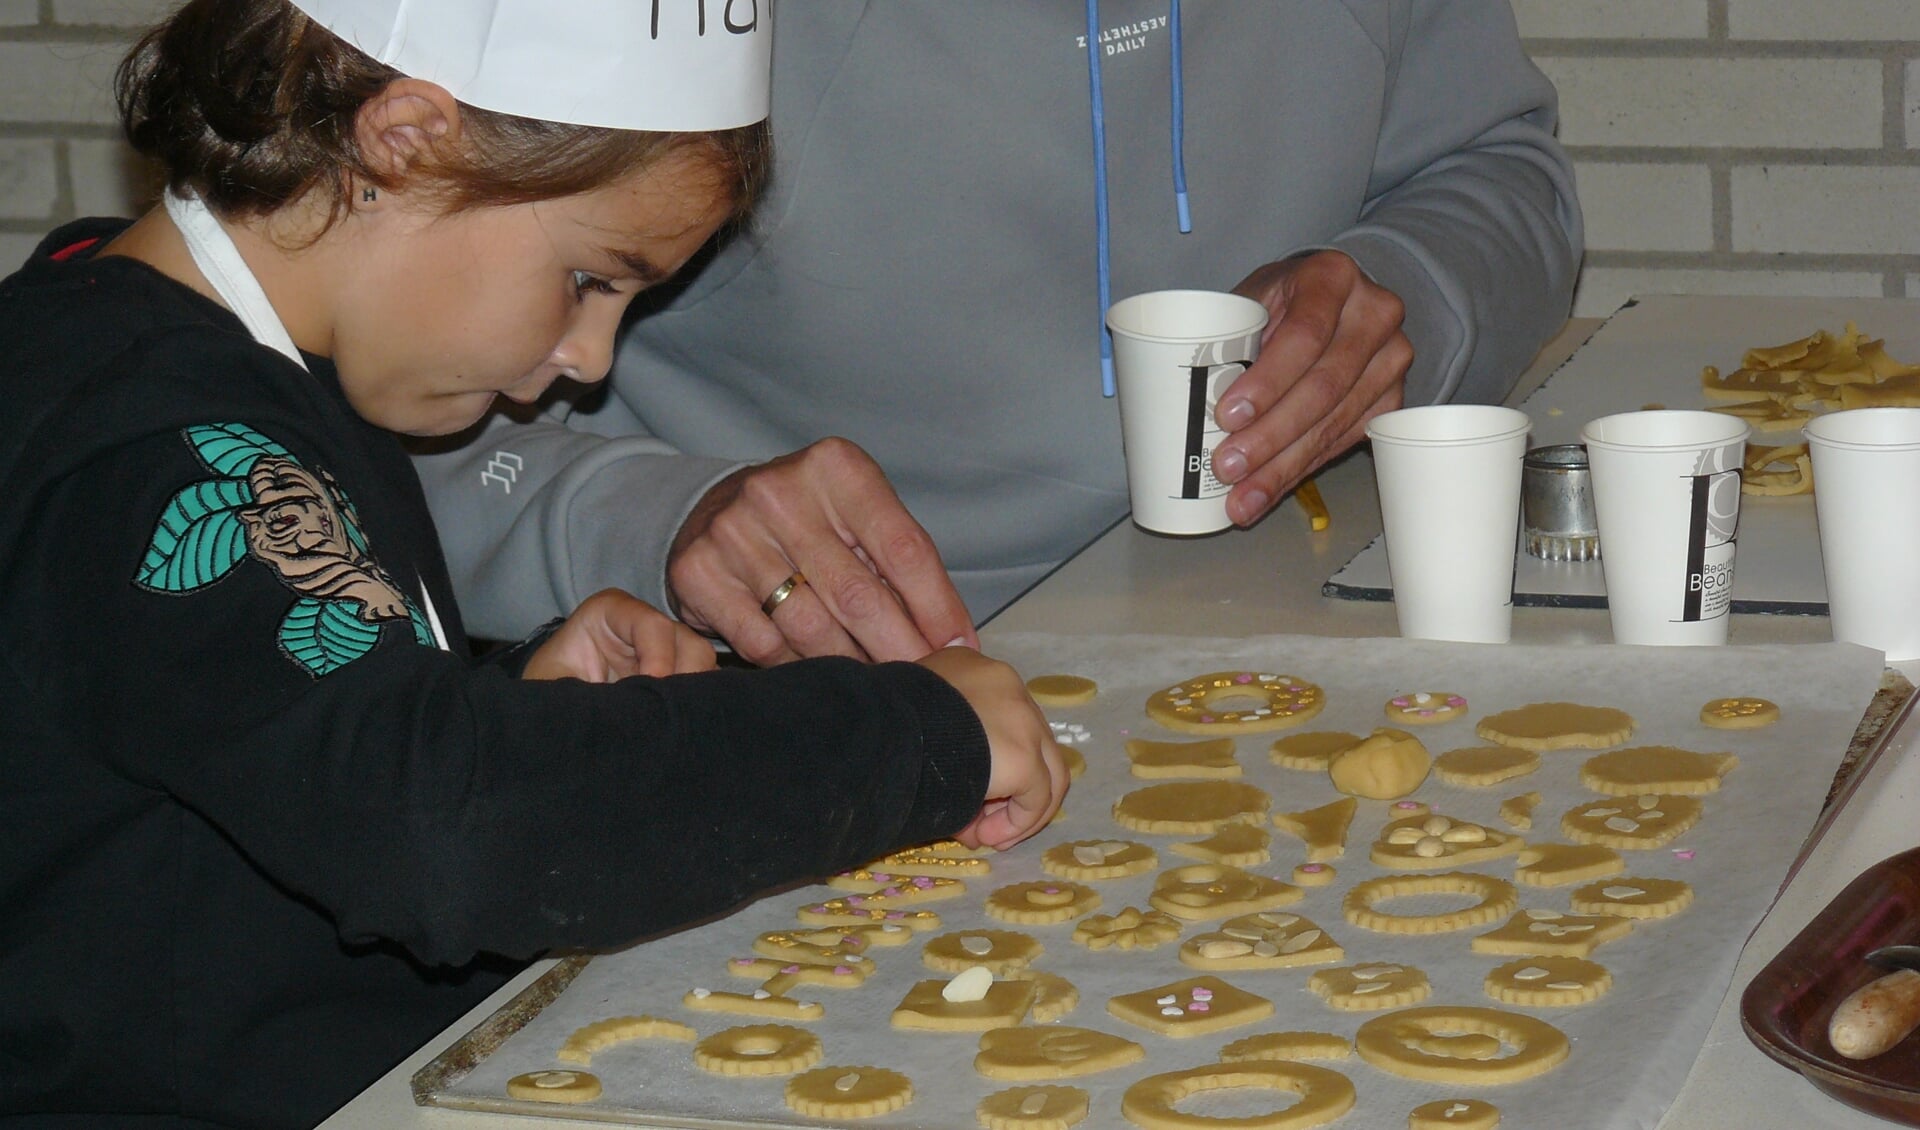 Opperste concentratie tijdens het koekjes bakken in De Wachter.